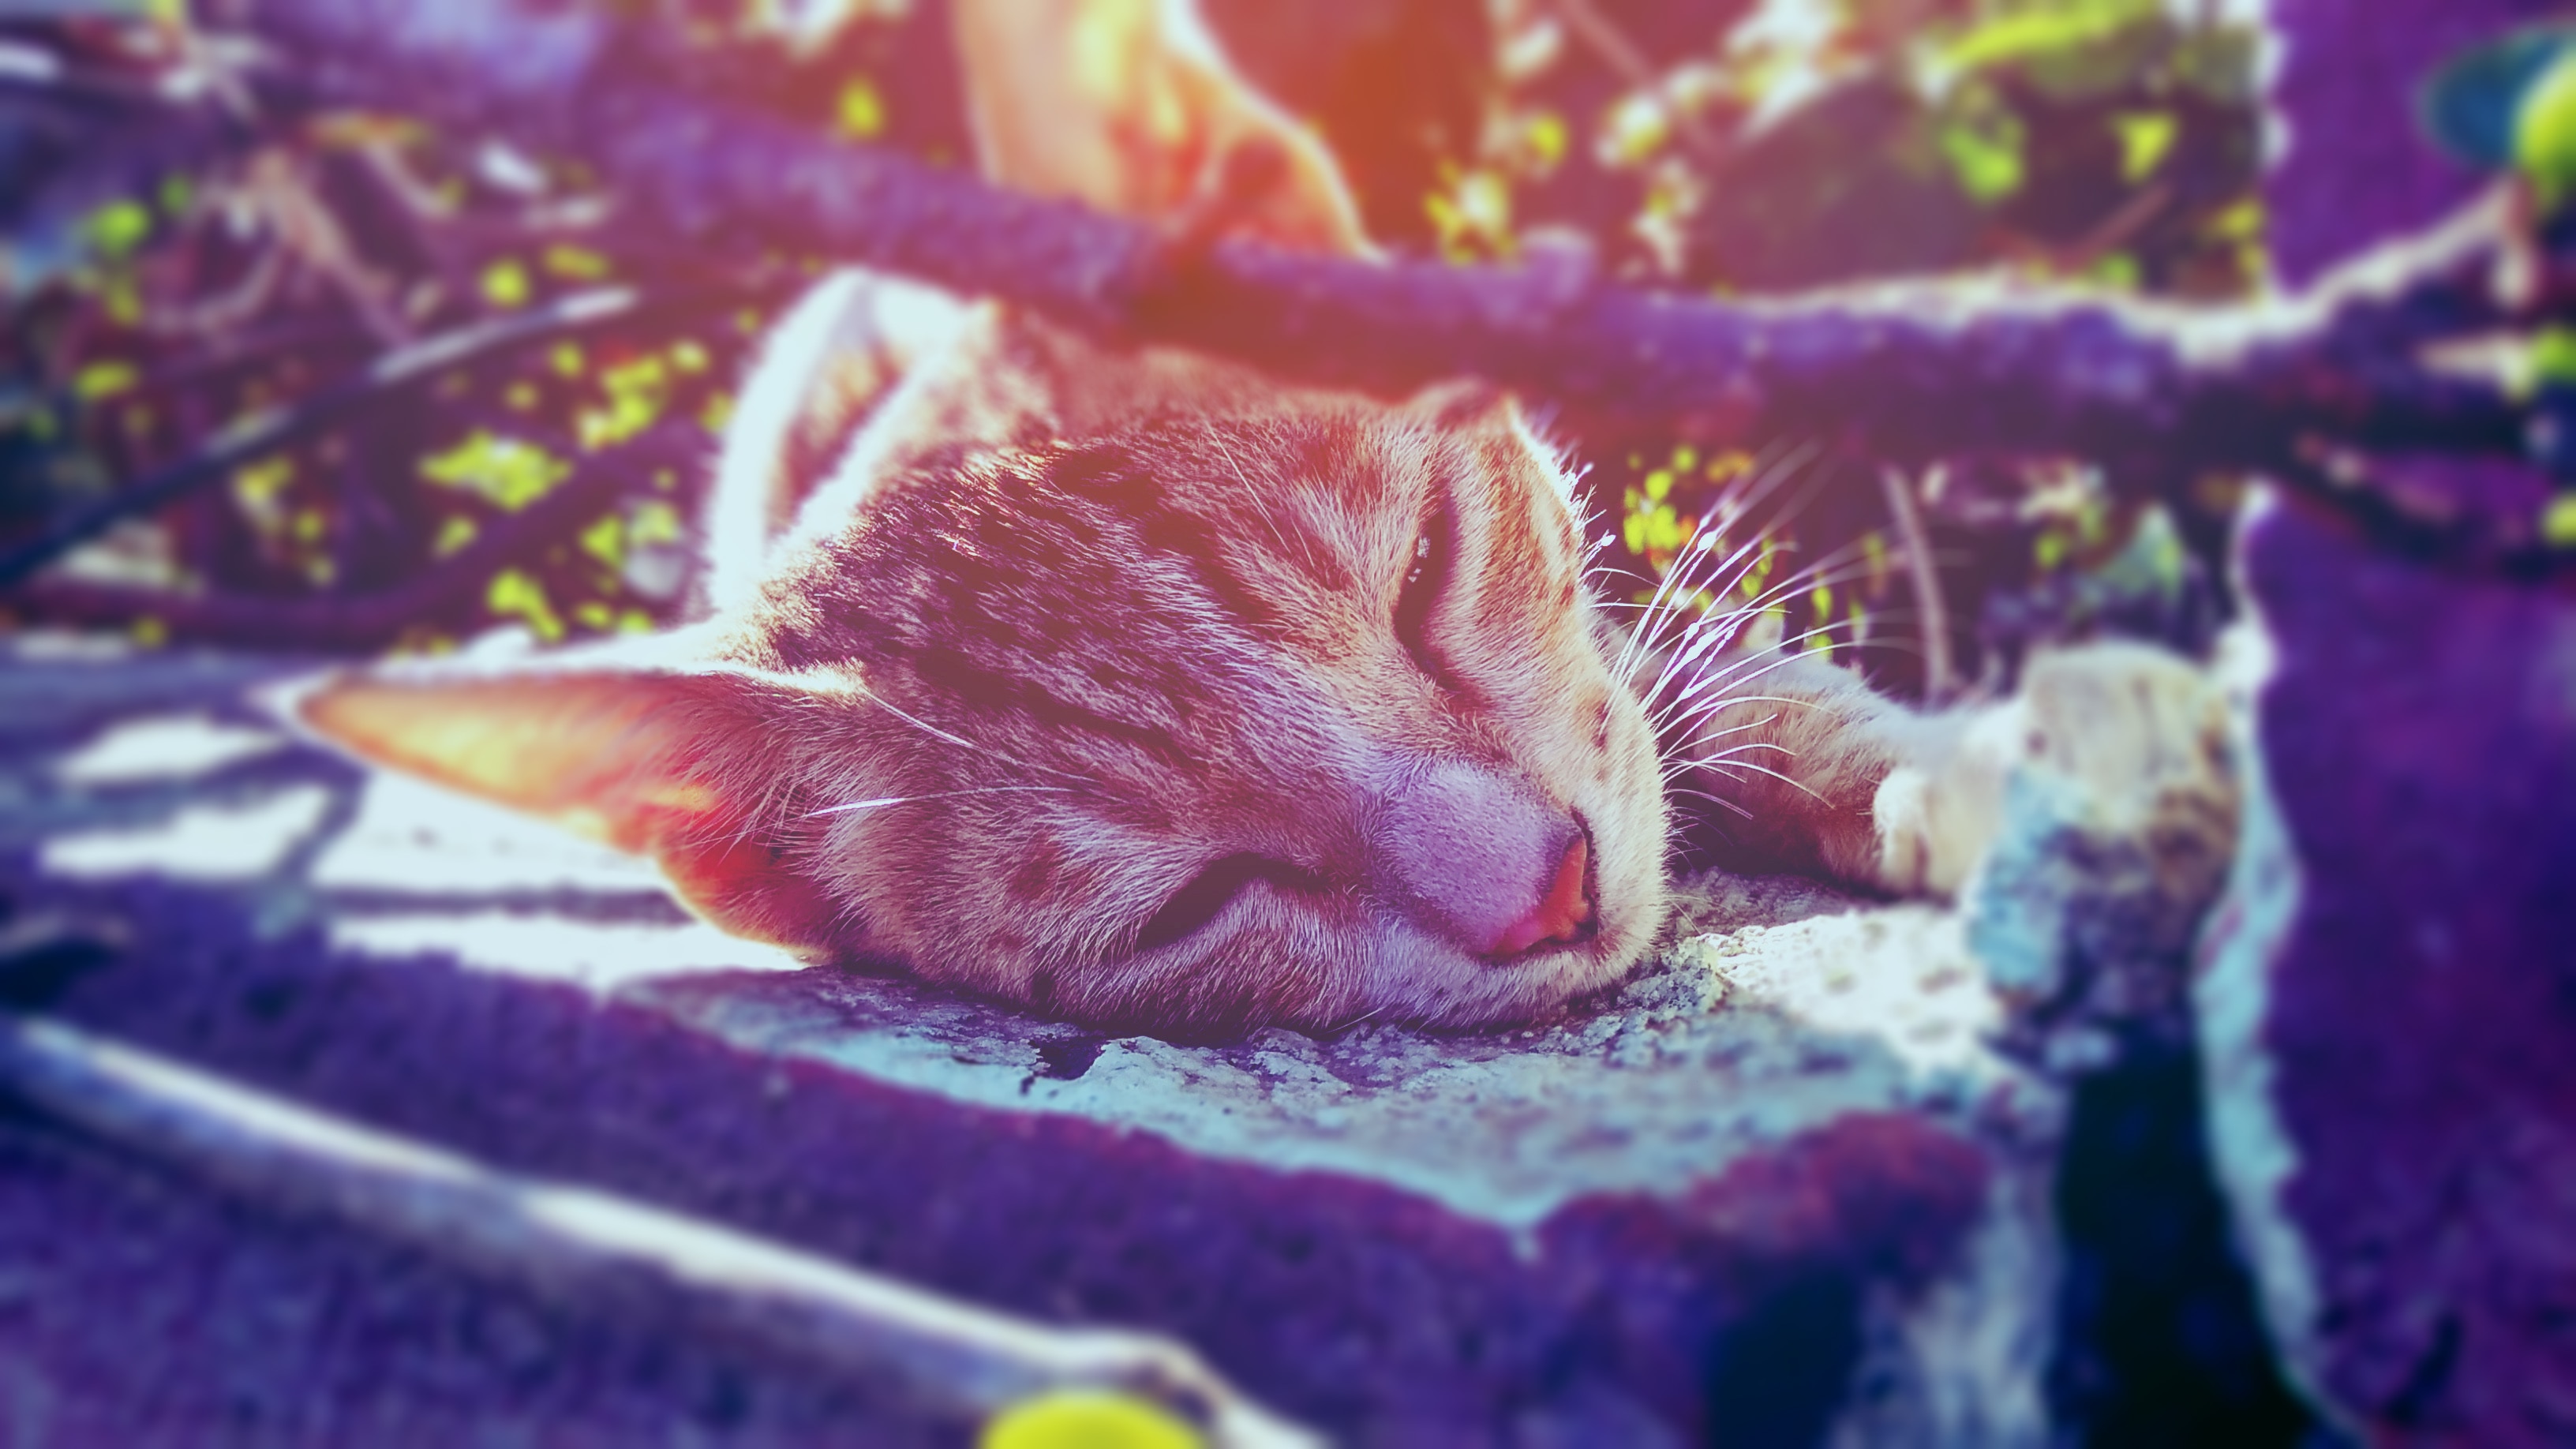 brown short fur cat sleeping near grass